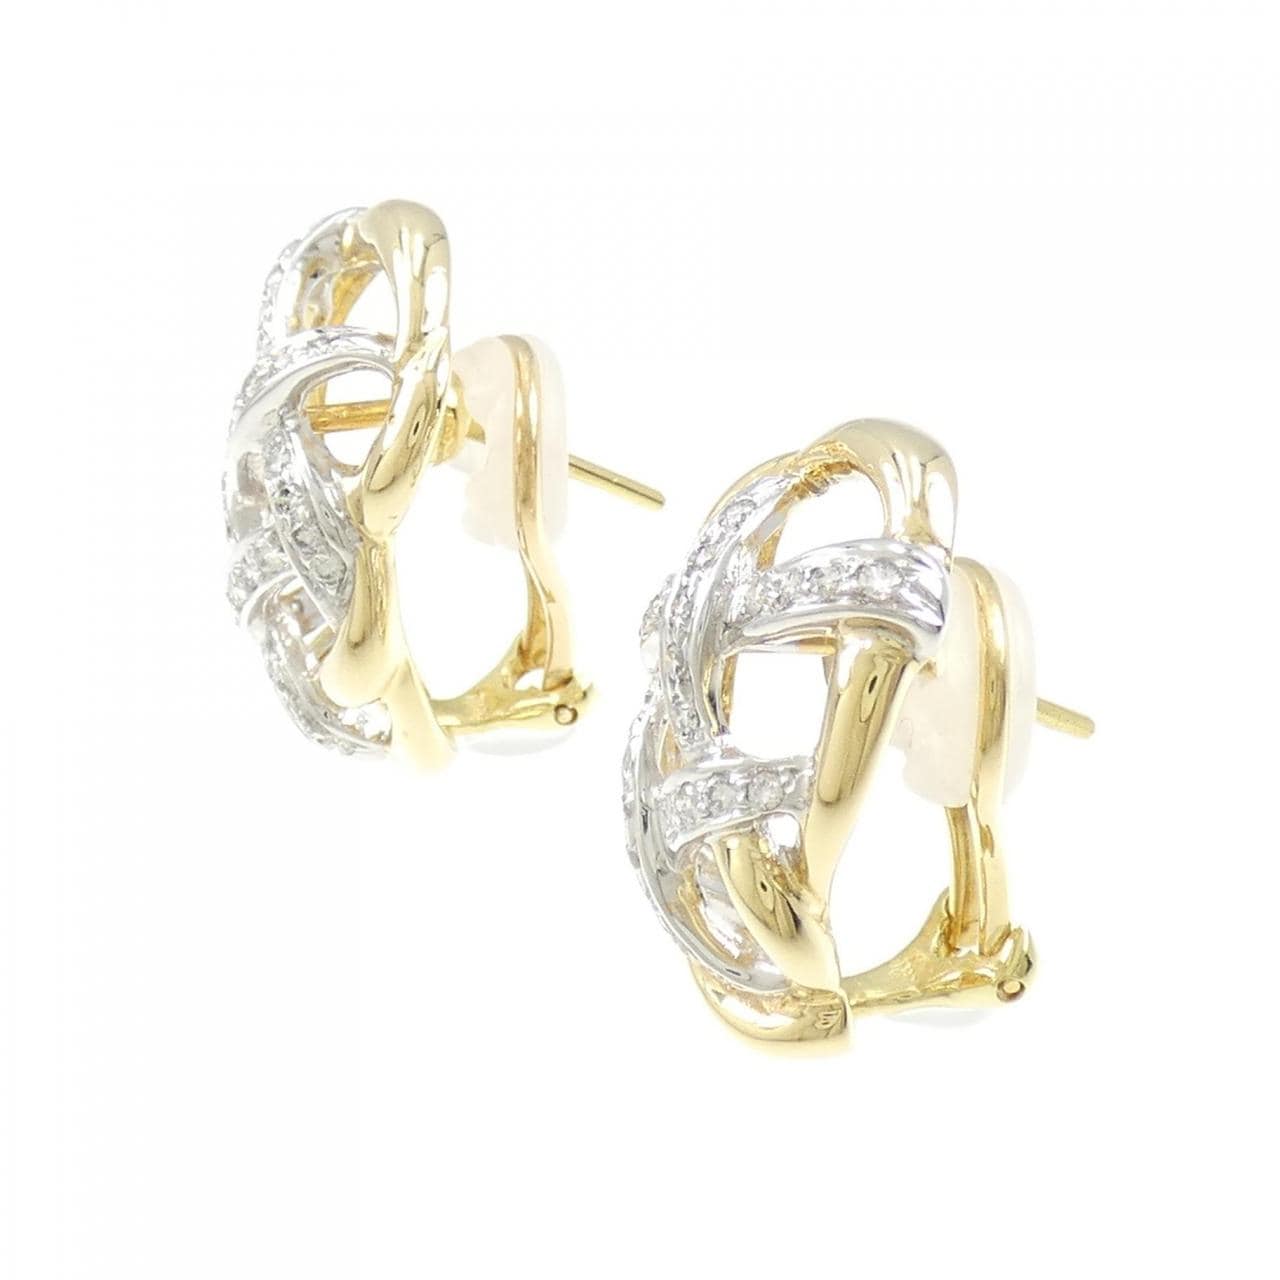 K18YG/K18WG Diamond earrings 0.72CT